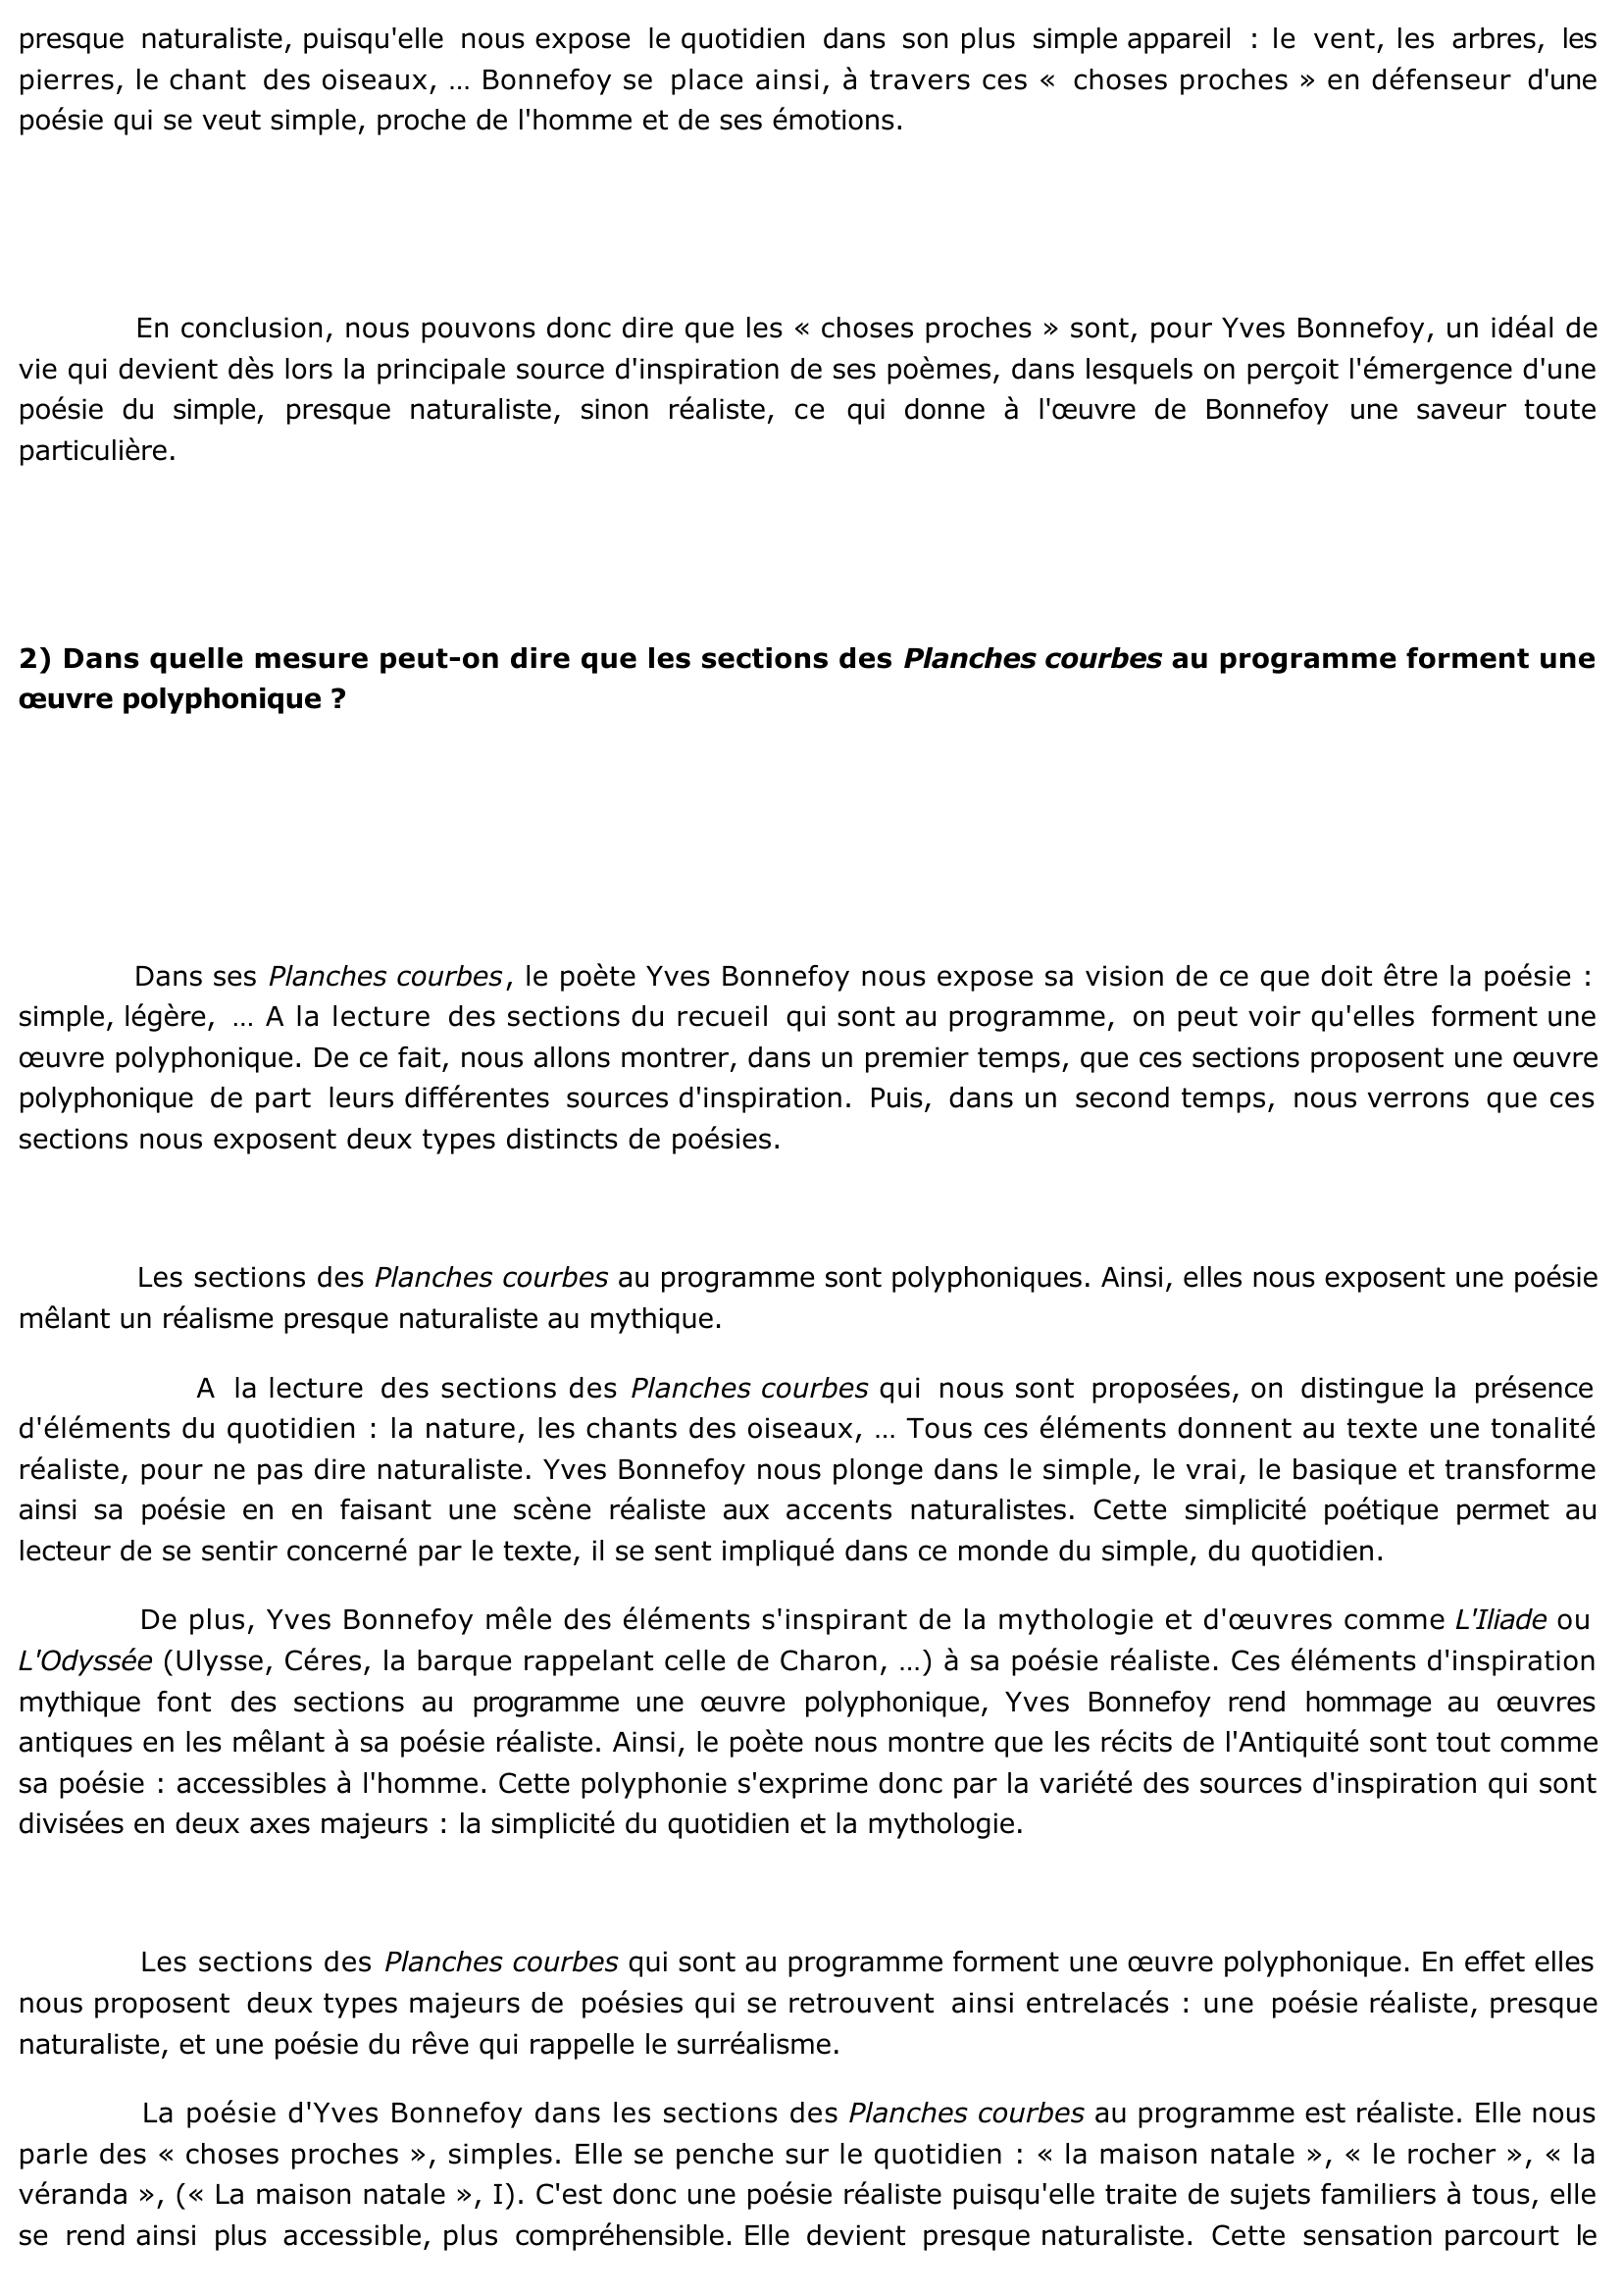 Prévisualisation du document "Les Planches Courbes" de Bonnefoy